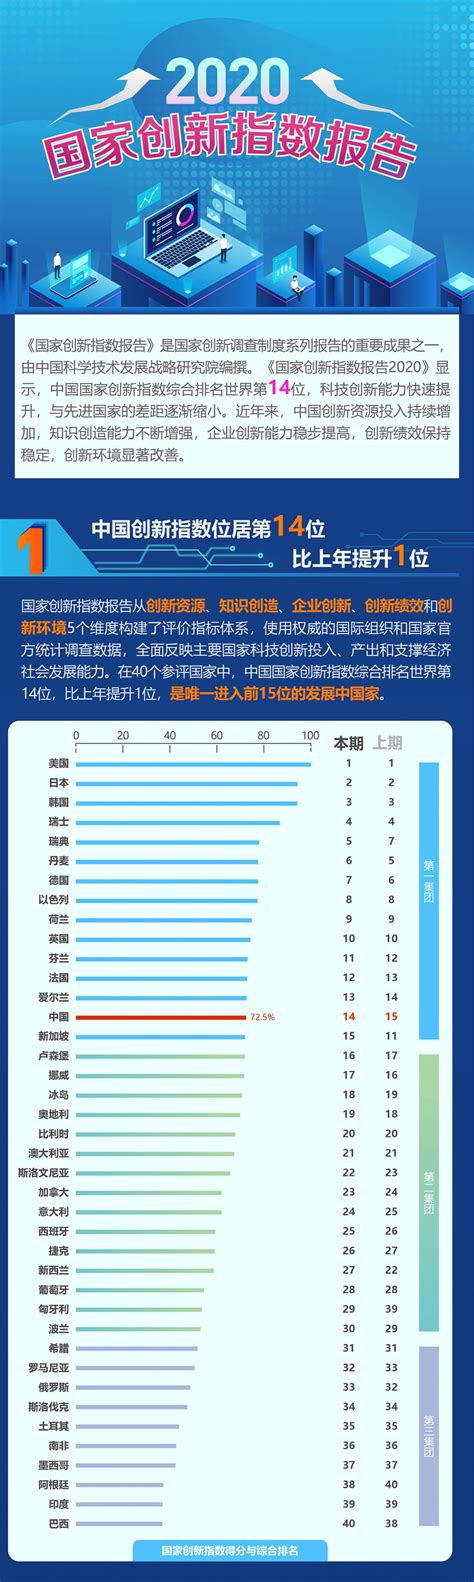 中国创新综合能力排名前三